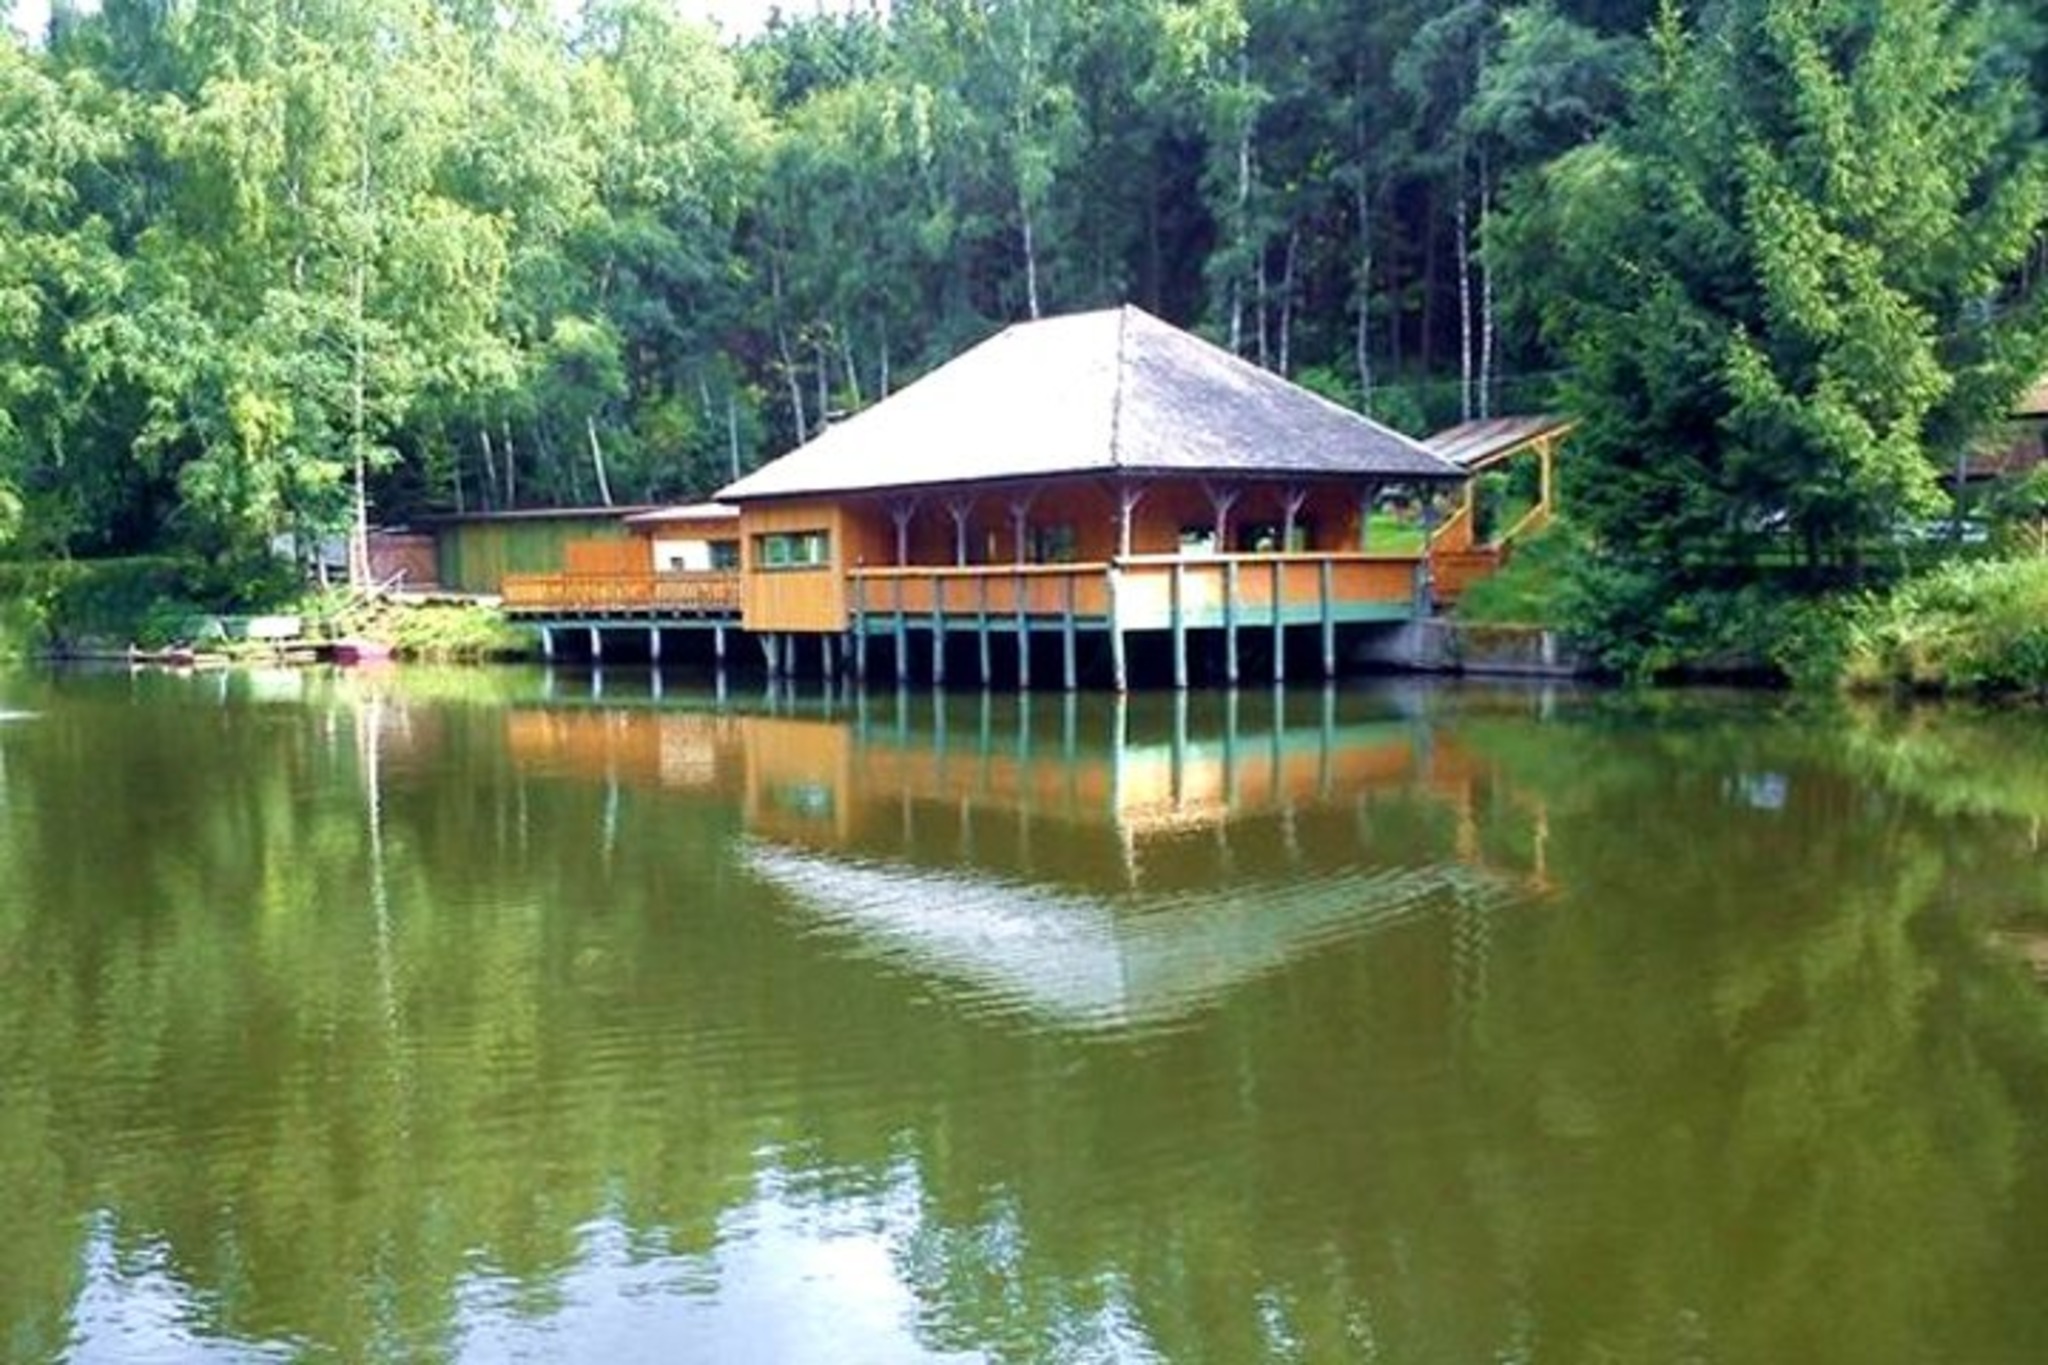 Restaurant mitten im Wald an einem Fischteich gelegen